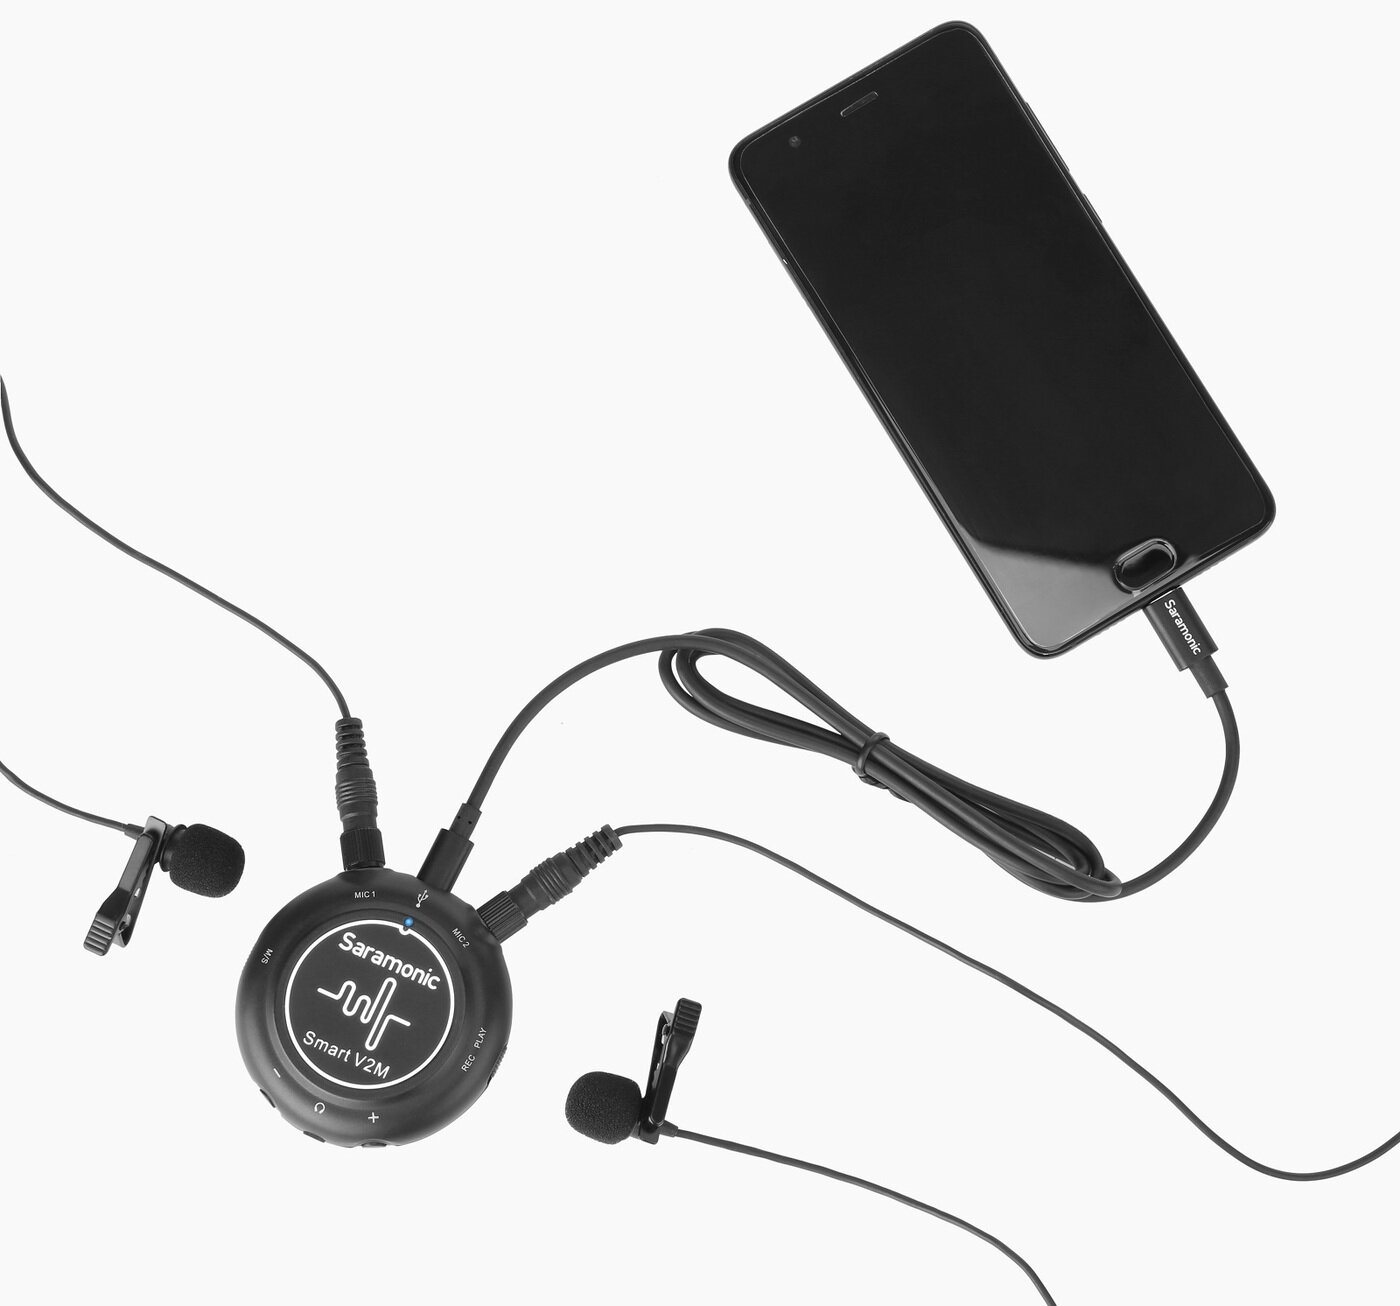 Saramonic Smart V2M Двухканальный аудиомикшер 3.5мм для устройств Android, iOS и компьютеров с двумя входами на 3.5мм и кабелем Type-C